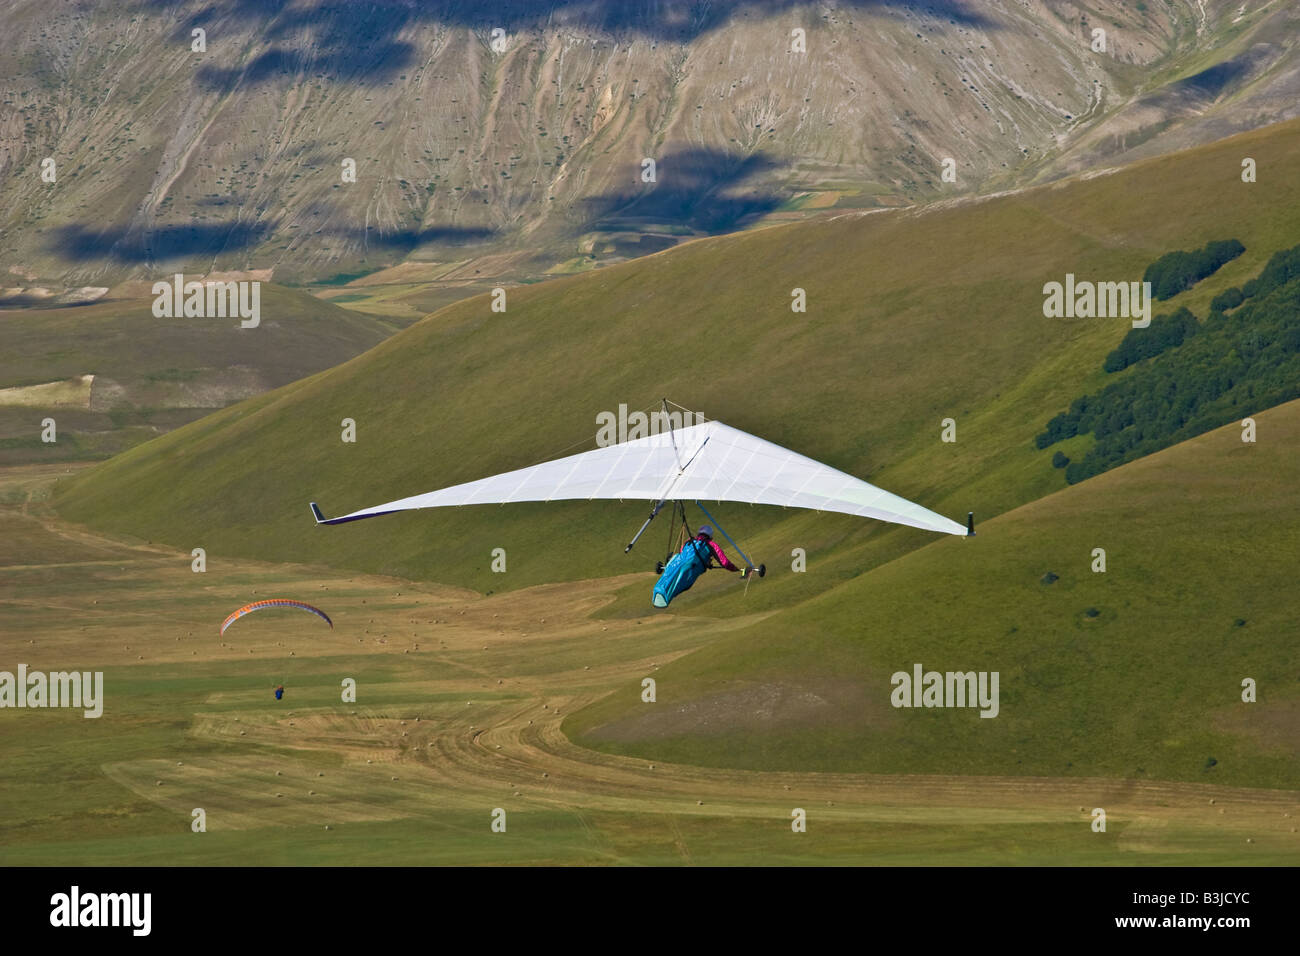 Drachenfliegen Gleitschirm Mann Frau weißen Sport extreme Monti Sibillini Umbrien Italien Marken fliegen Stockfoto